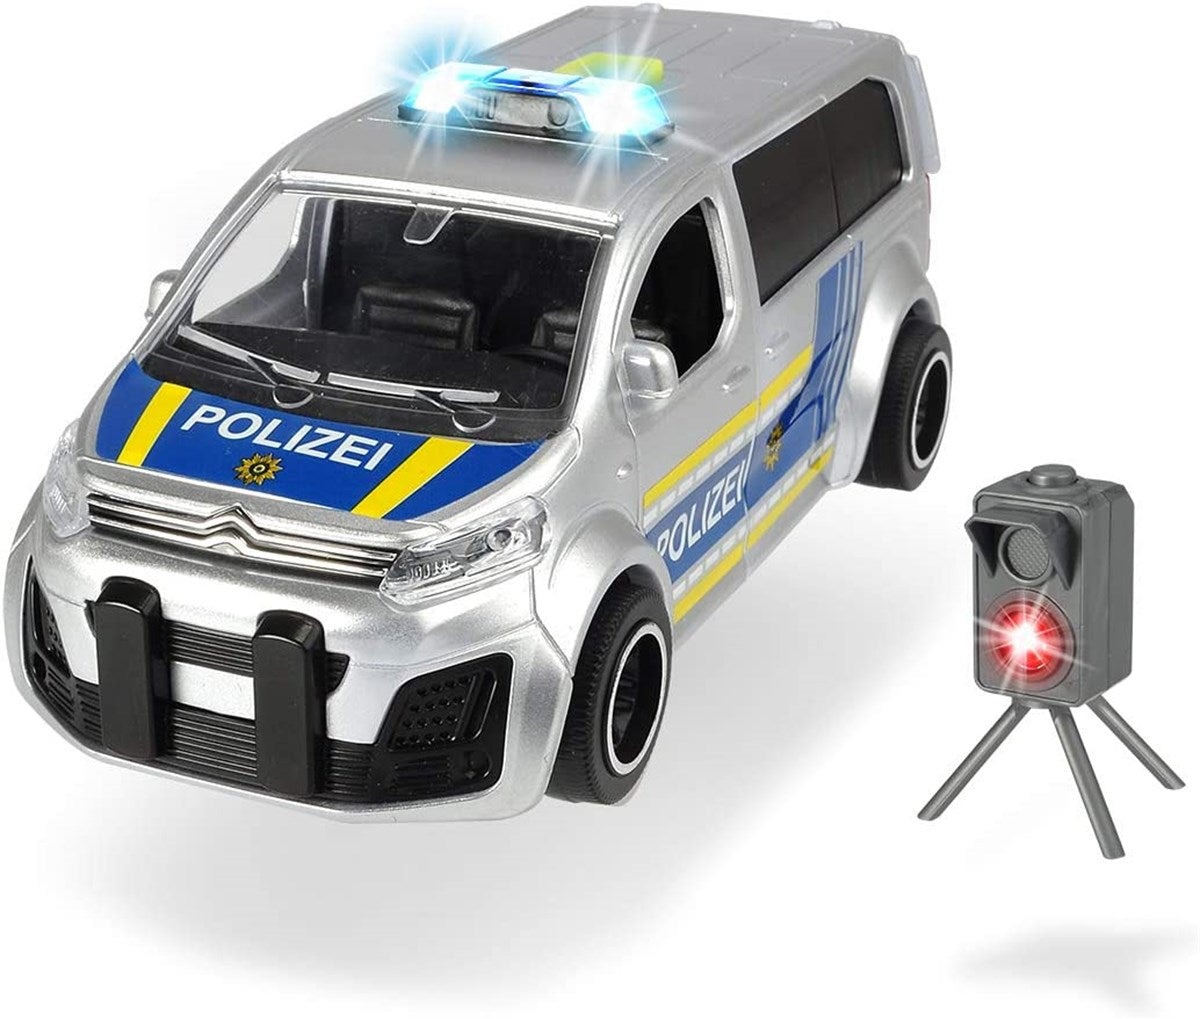 Dickie Radarlı Citroen Polis Arabası 203713010 | Toysall